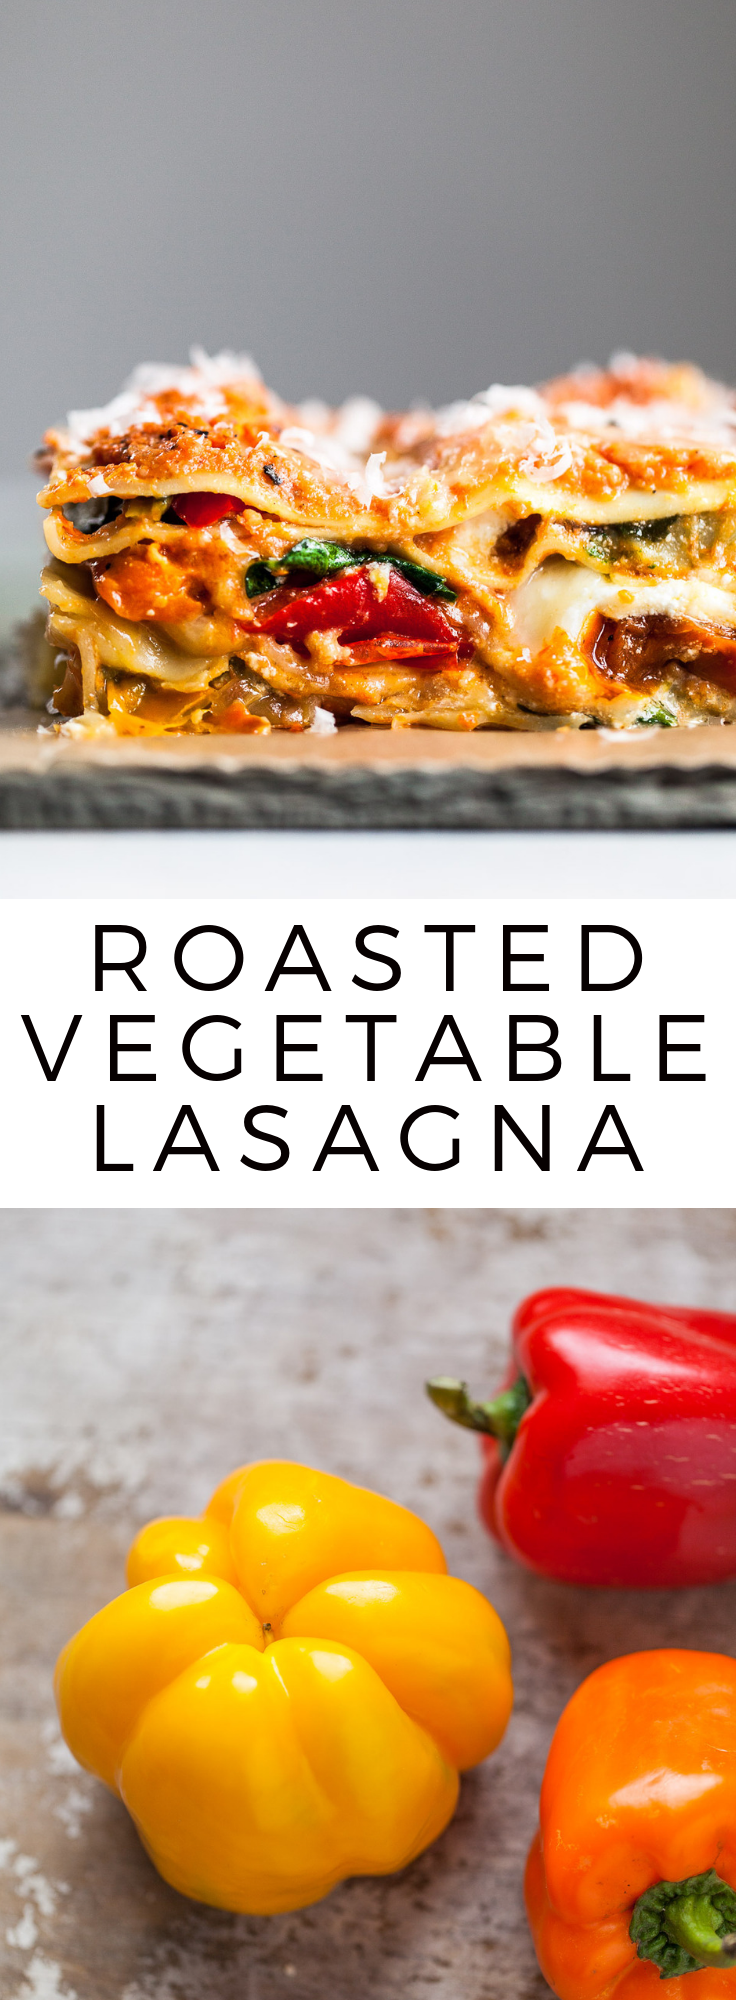 Roasted Vegetable Lasagna -   19 meatless lasagna recipes
 ideas